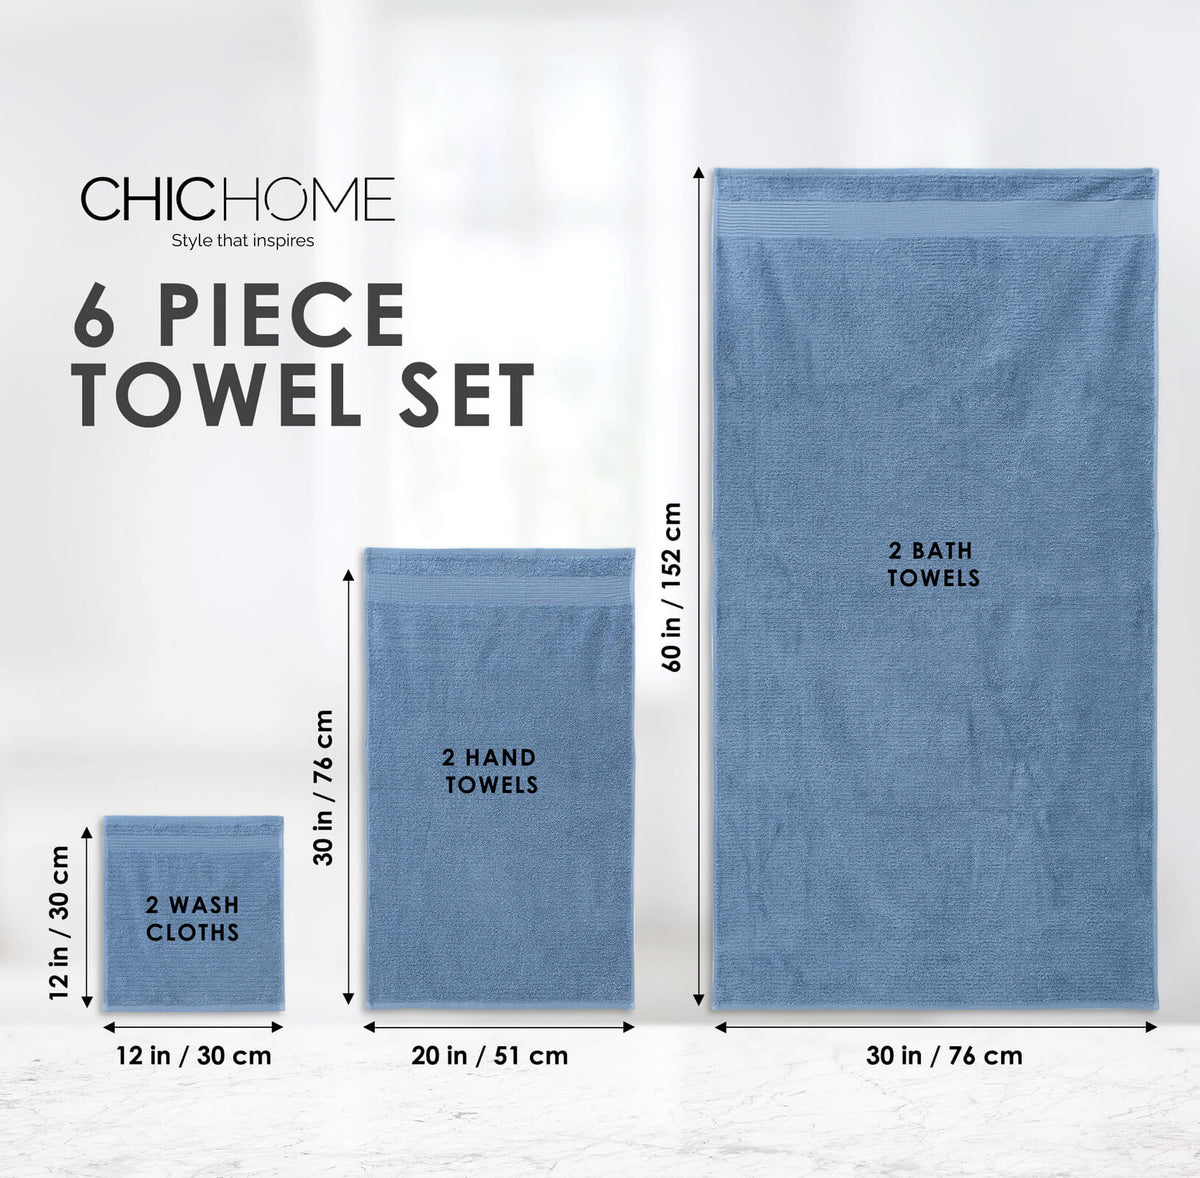 Turkish Kitchen Towels, 6-piece Set